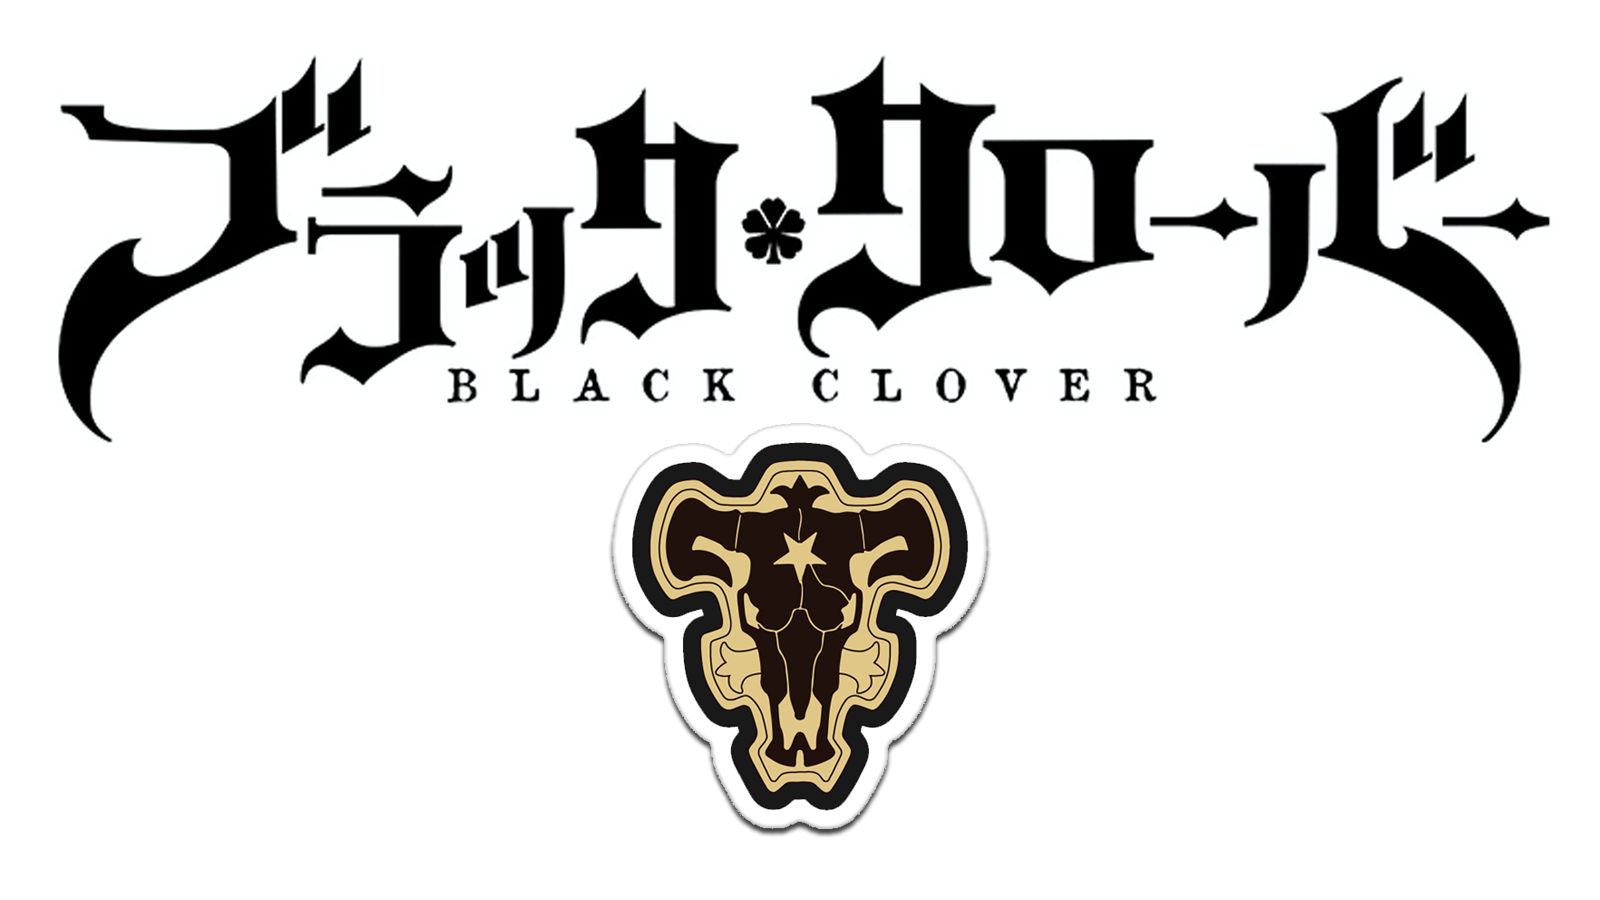 Blackbull Black Clover Image